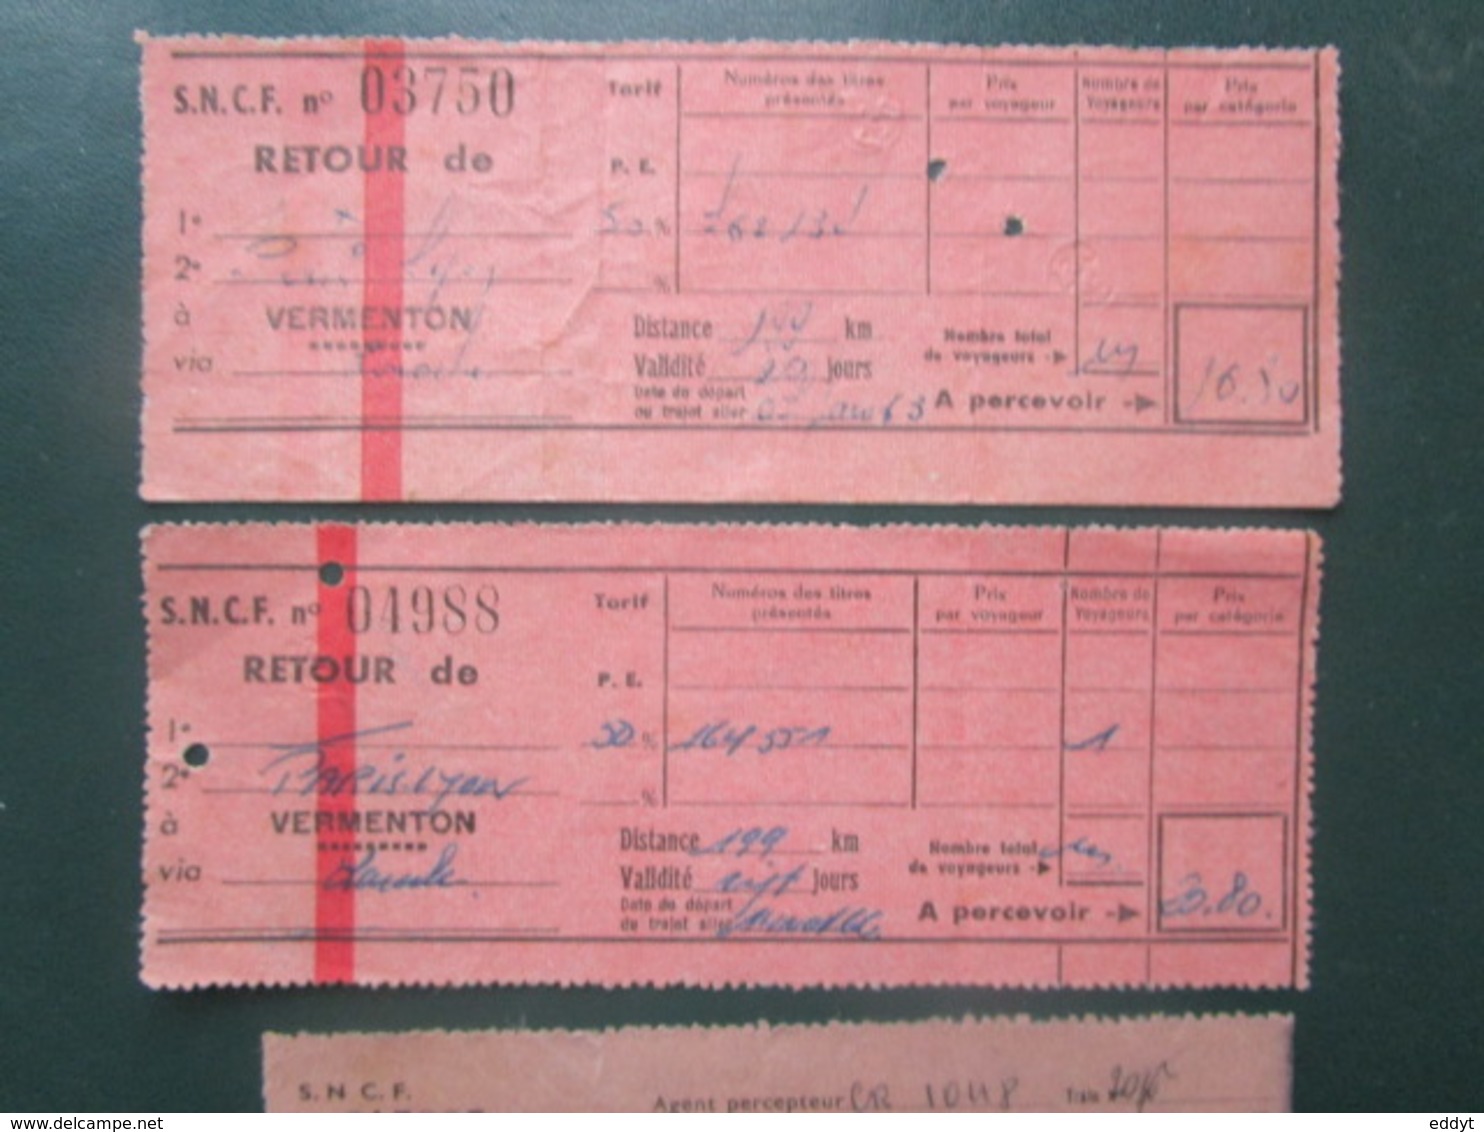 4 BILLETS Tickets De Train - S.N.C.F.  - France -  Dans Les Années 1945/années 60 "couleur Vieux Rose" - World